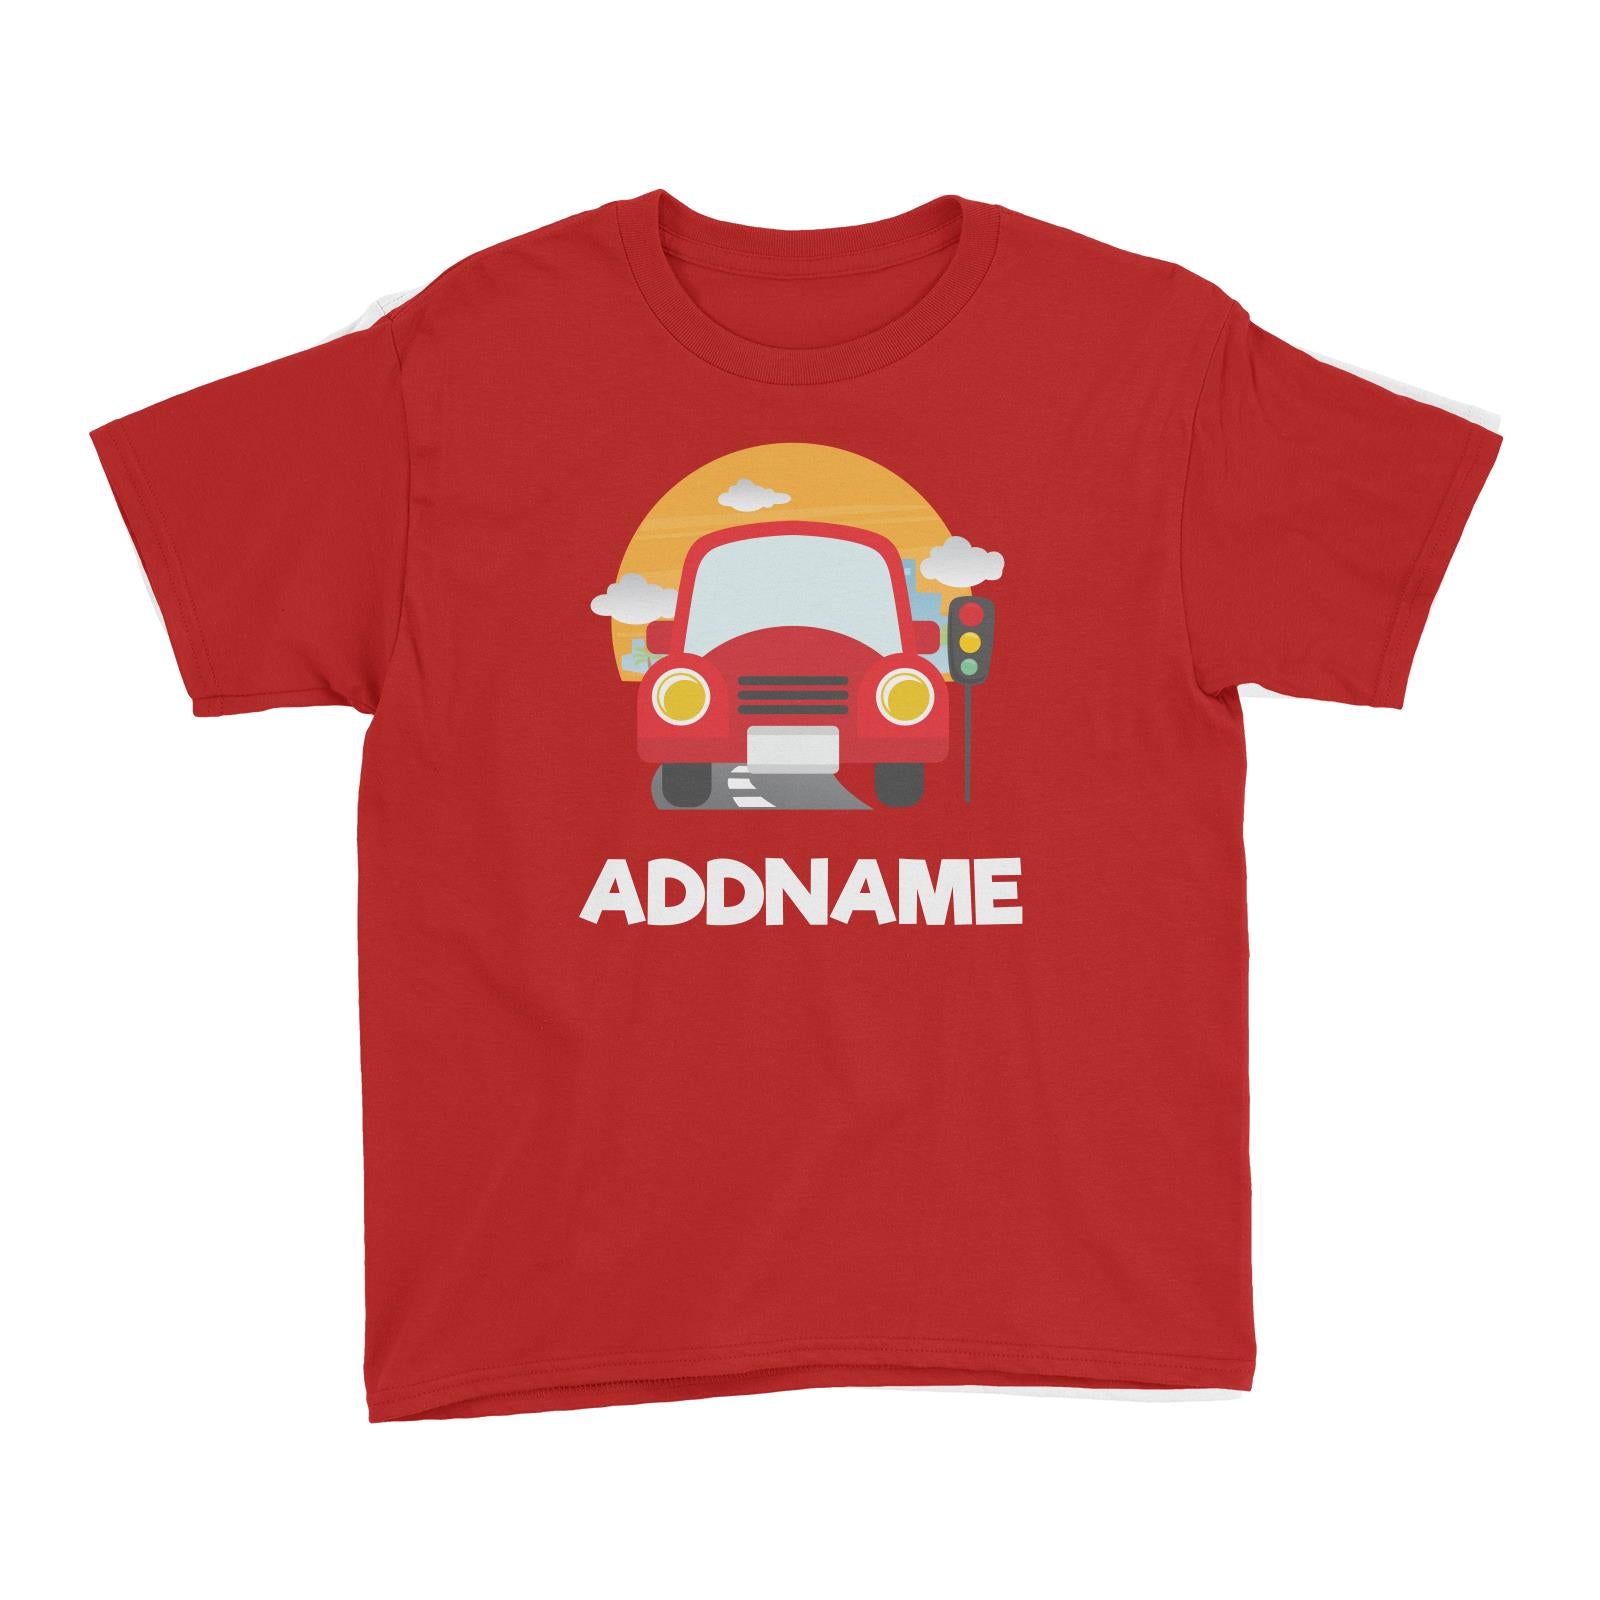 Cute Cars Kid's T- Shirt